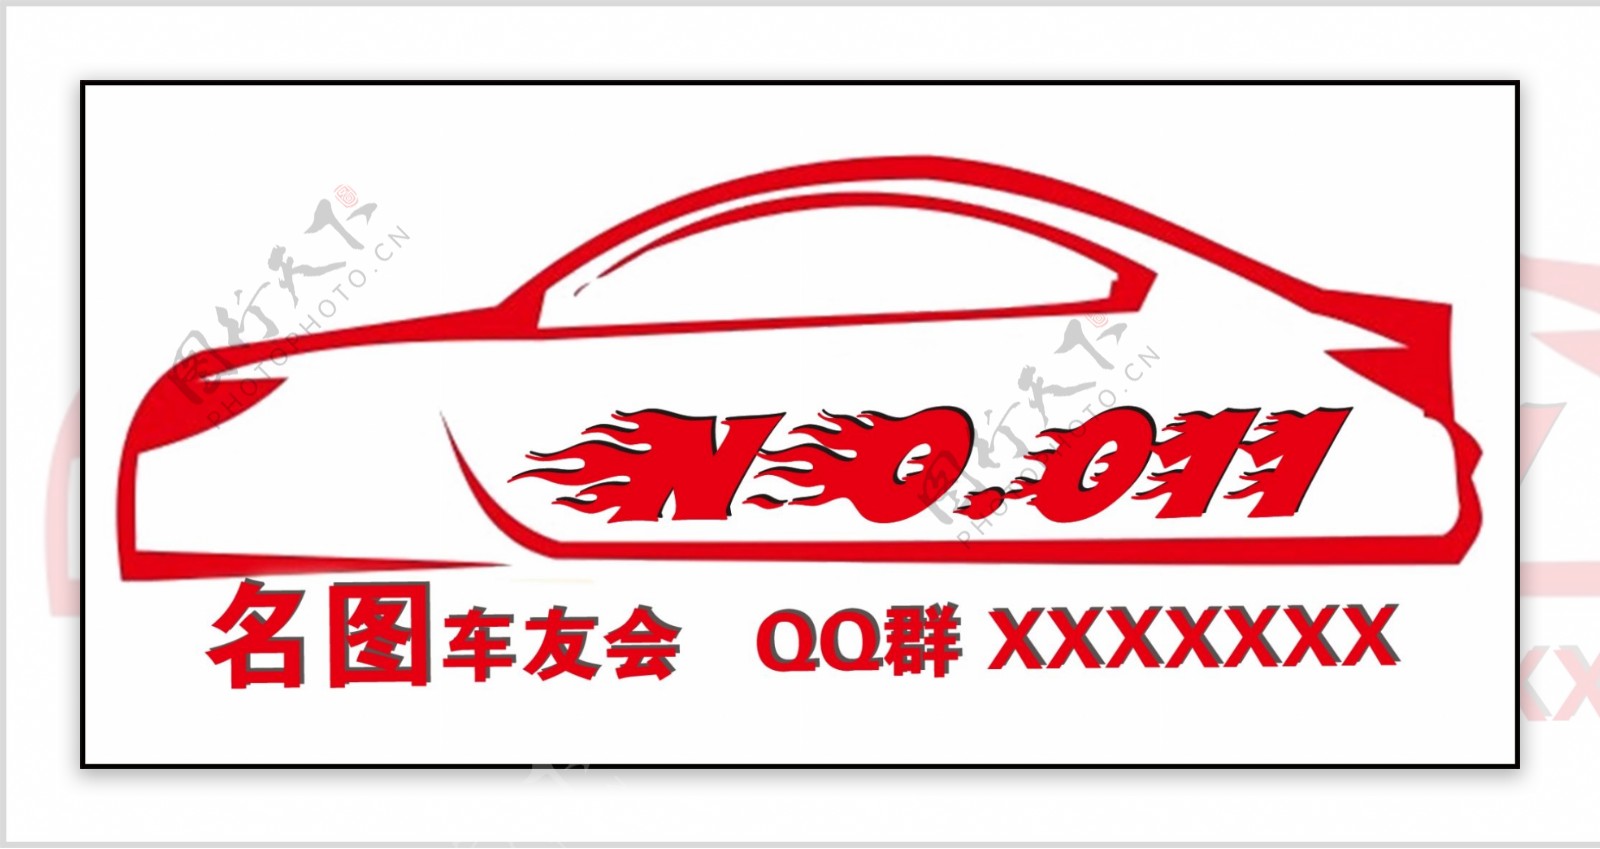 车友会名片logo设计社交类用图标